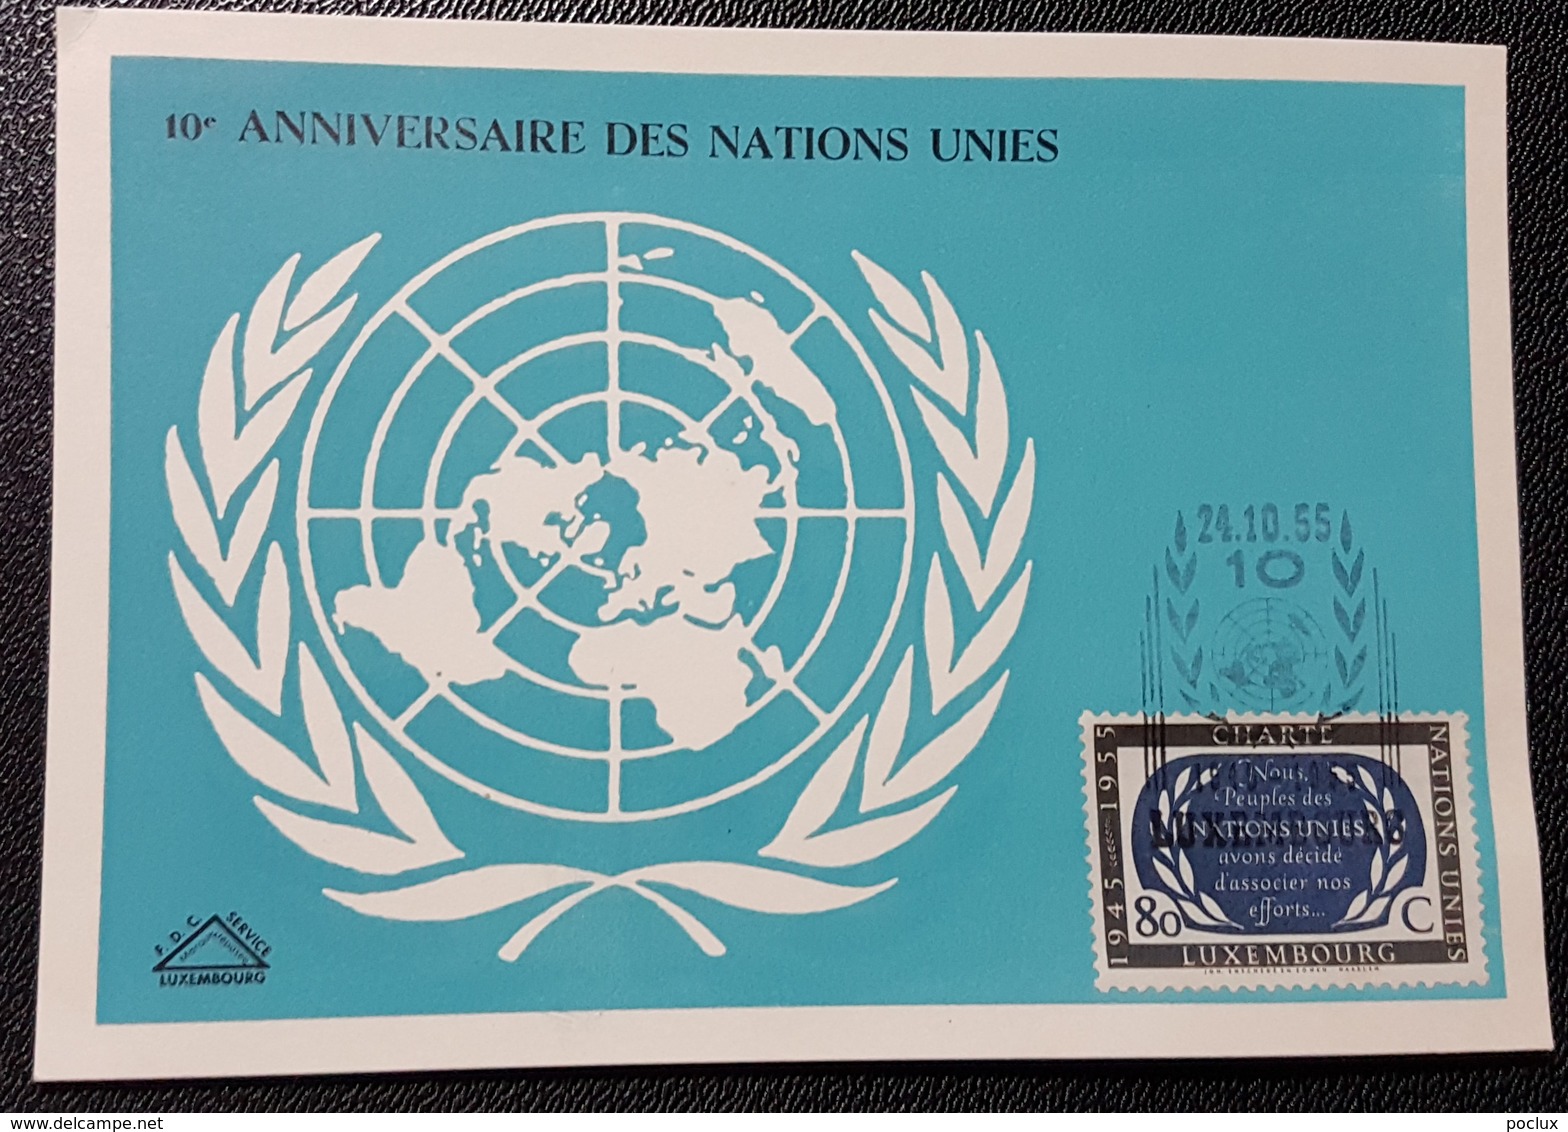 Luxembourg-Carte Commémorative 10 Ans Des Nations-Unies 1955 - Commemoration Cards